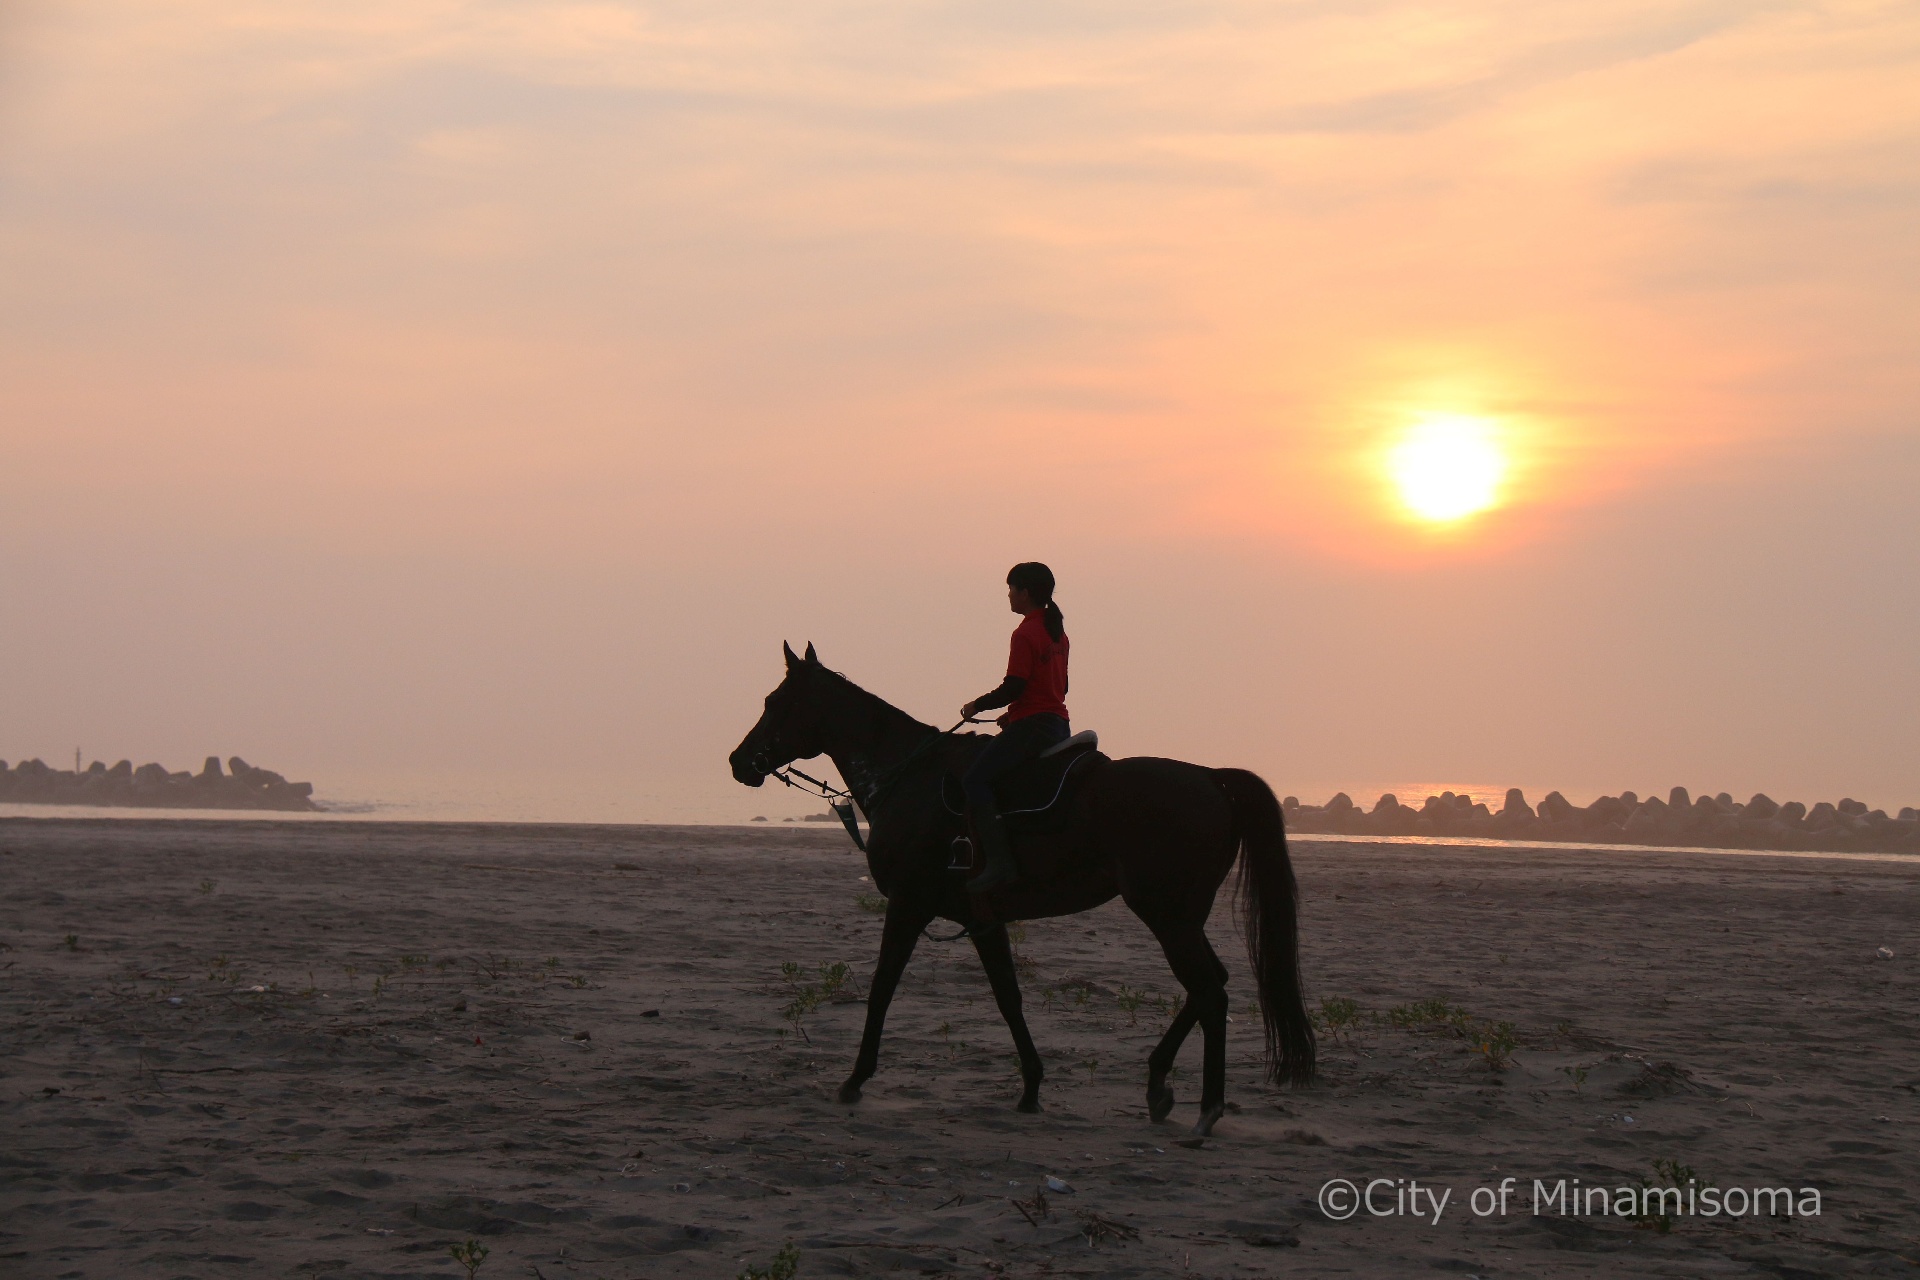 烏崎海岸での早朝錬馬の様子。7月の相馬野馬追に向けての練習で、早朝の砂浜を、人を乗せた馬が歩いている。